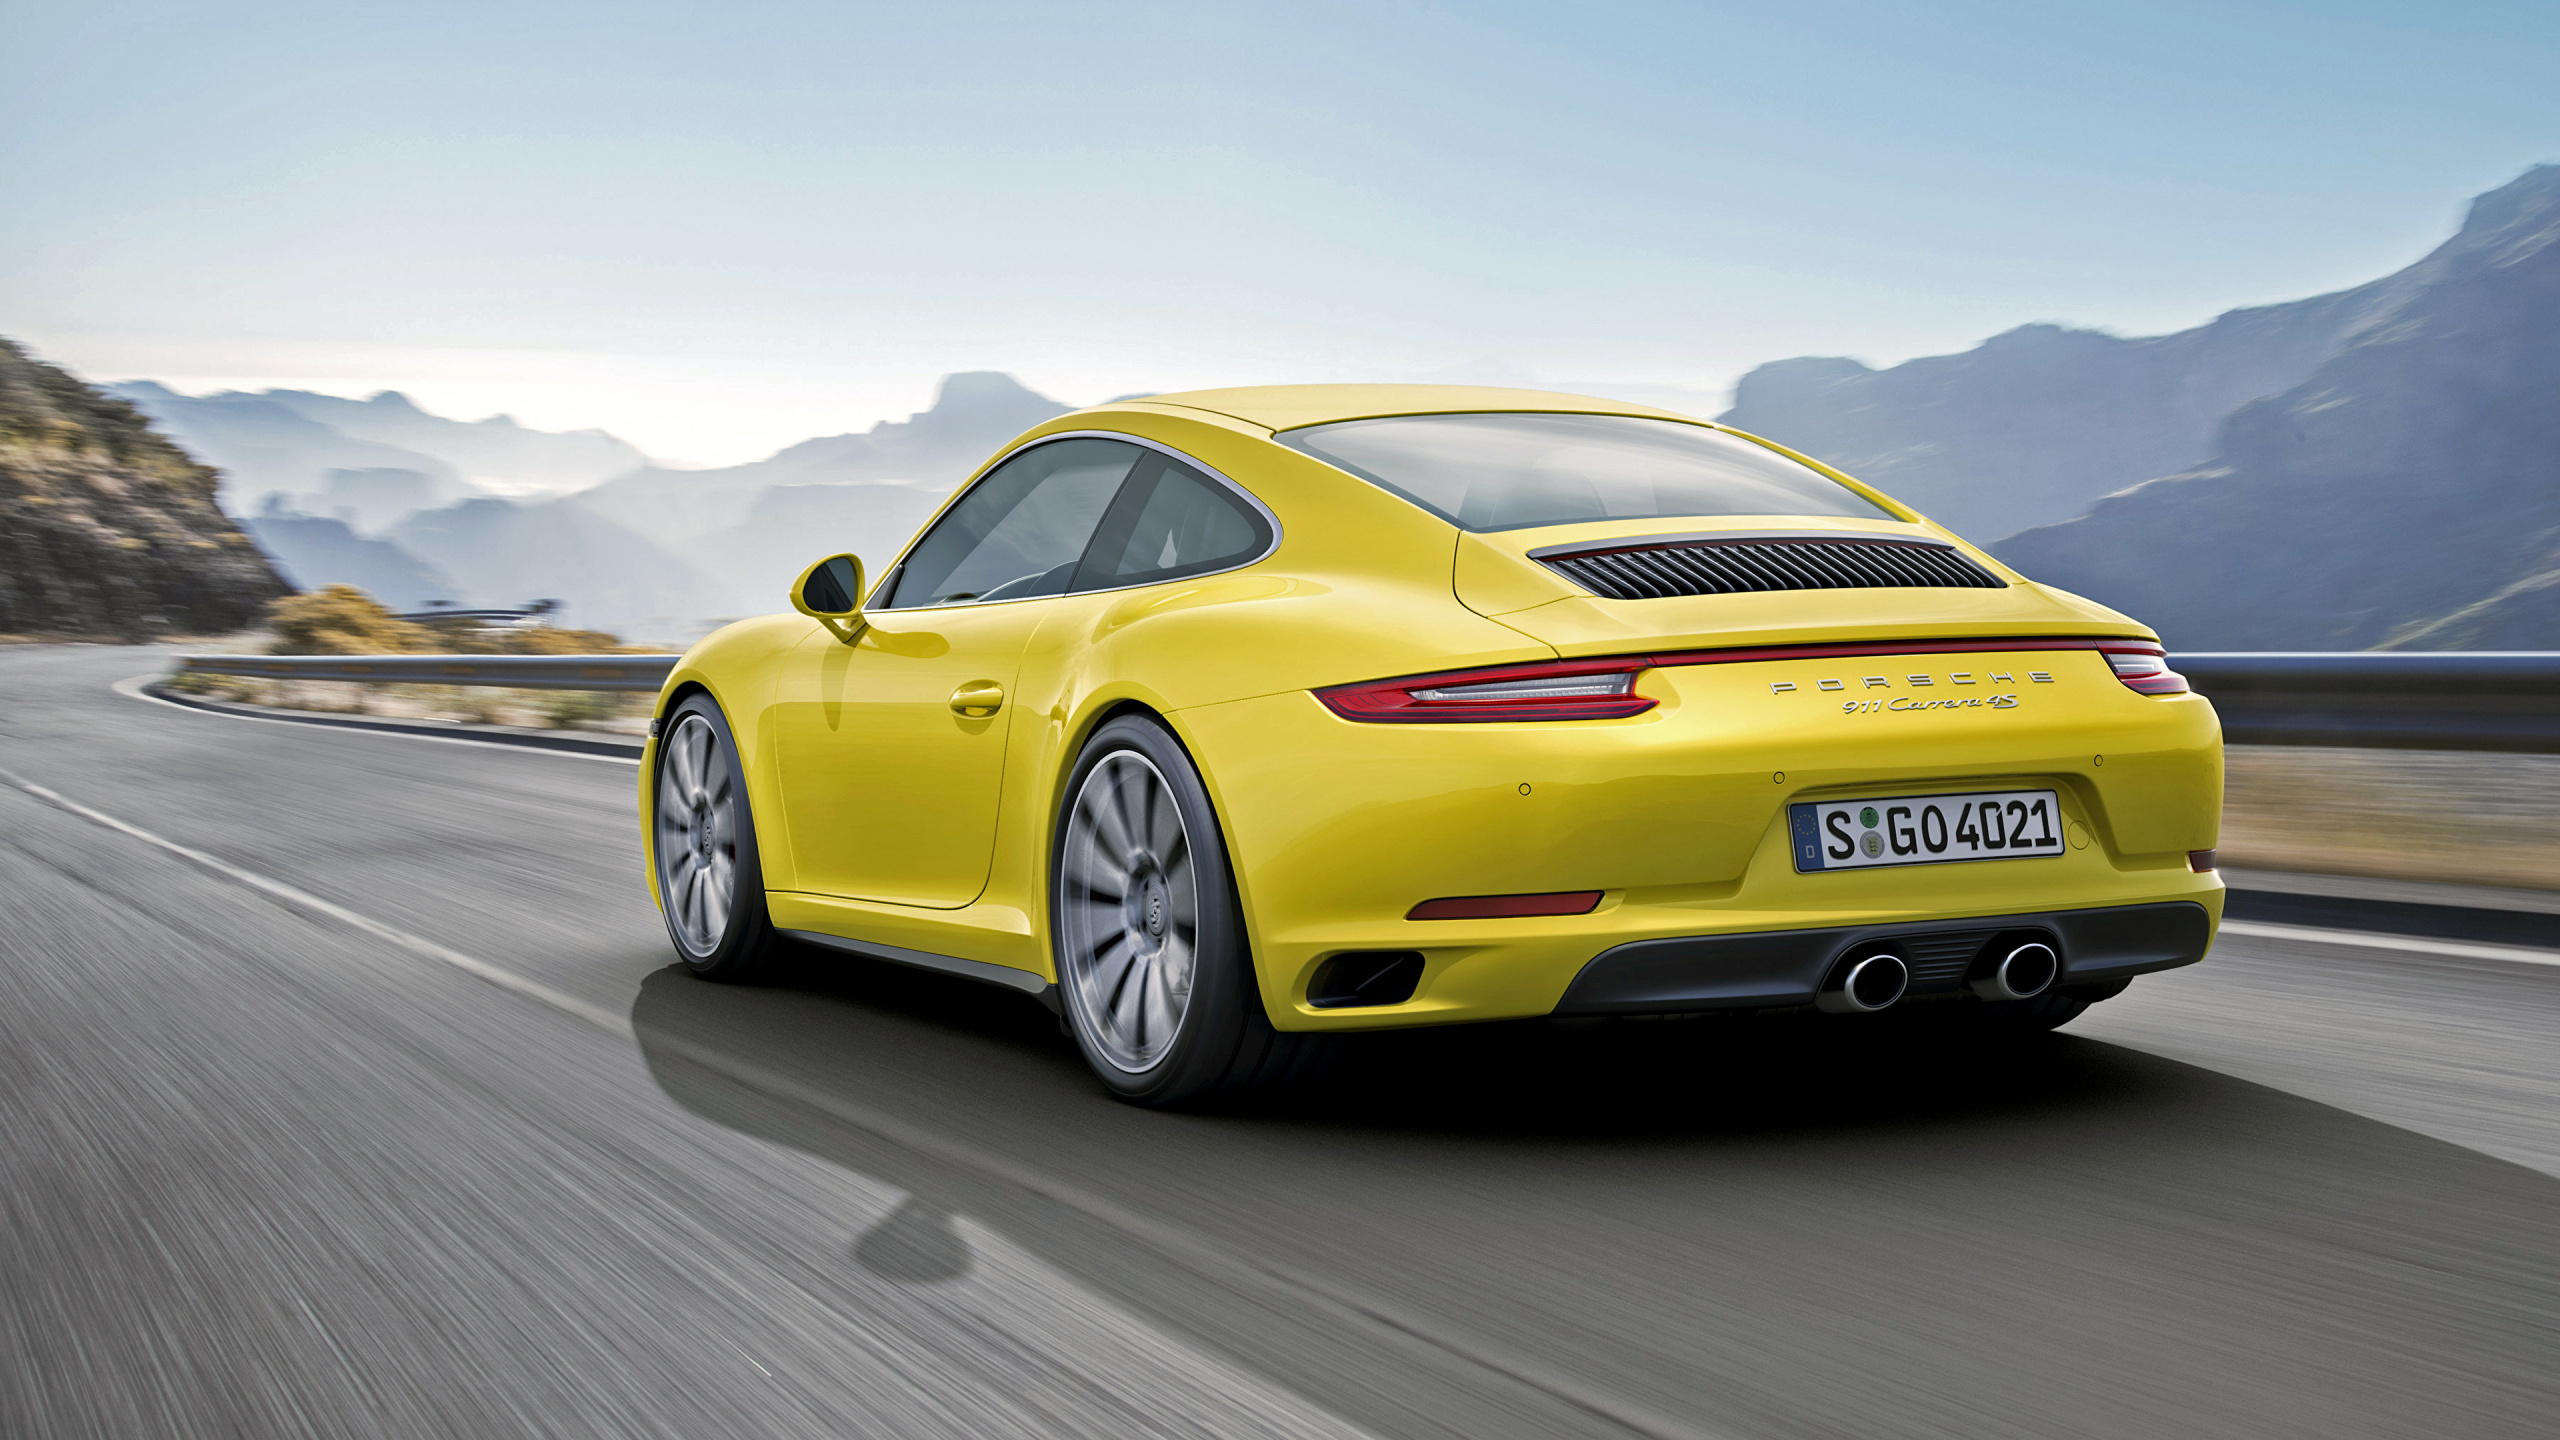 Gelber Porsche 911 Tagsüber Unterwegs. Wallpaper in 2560x1440 Resolution